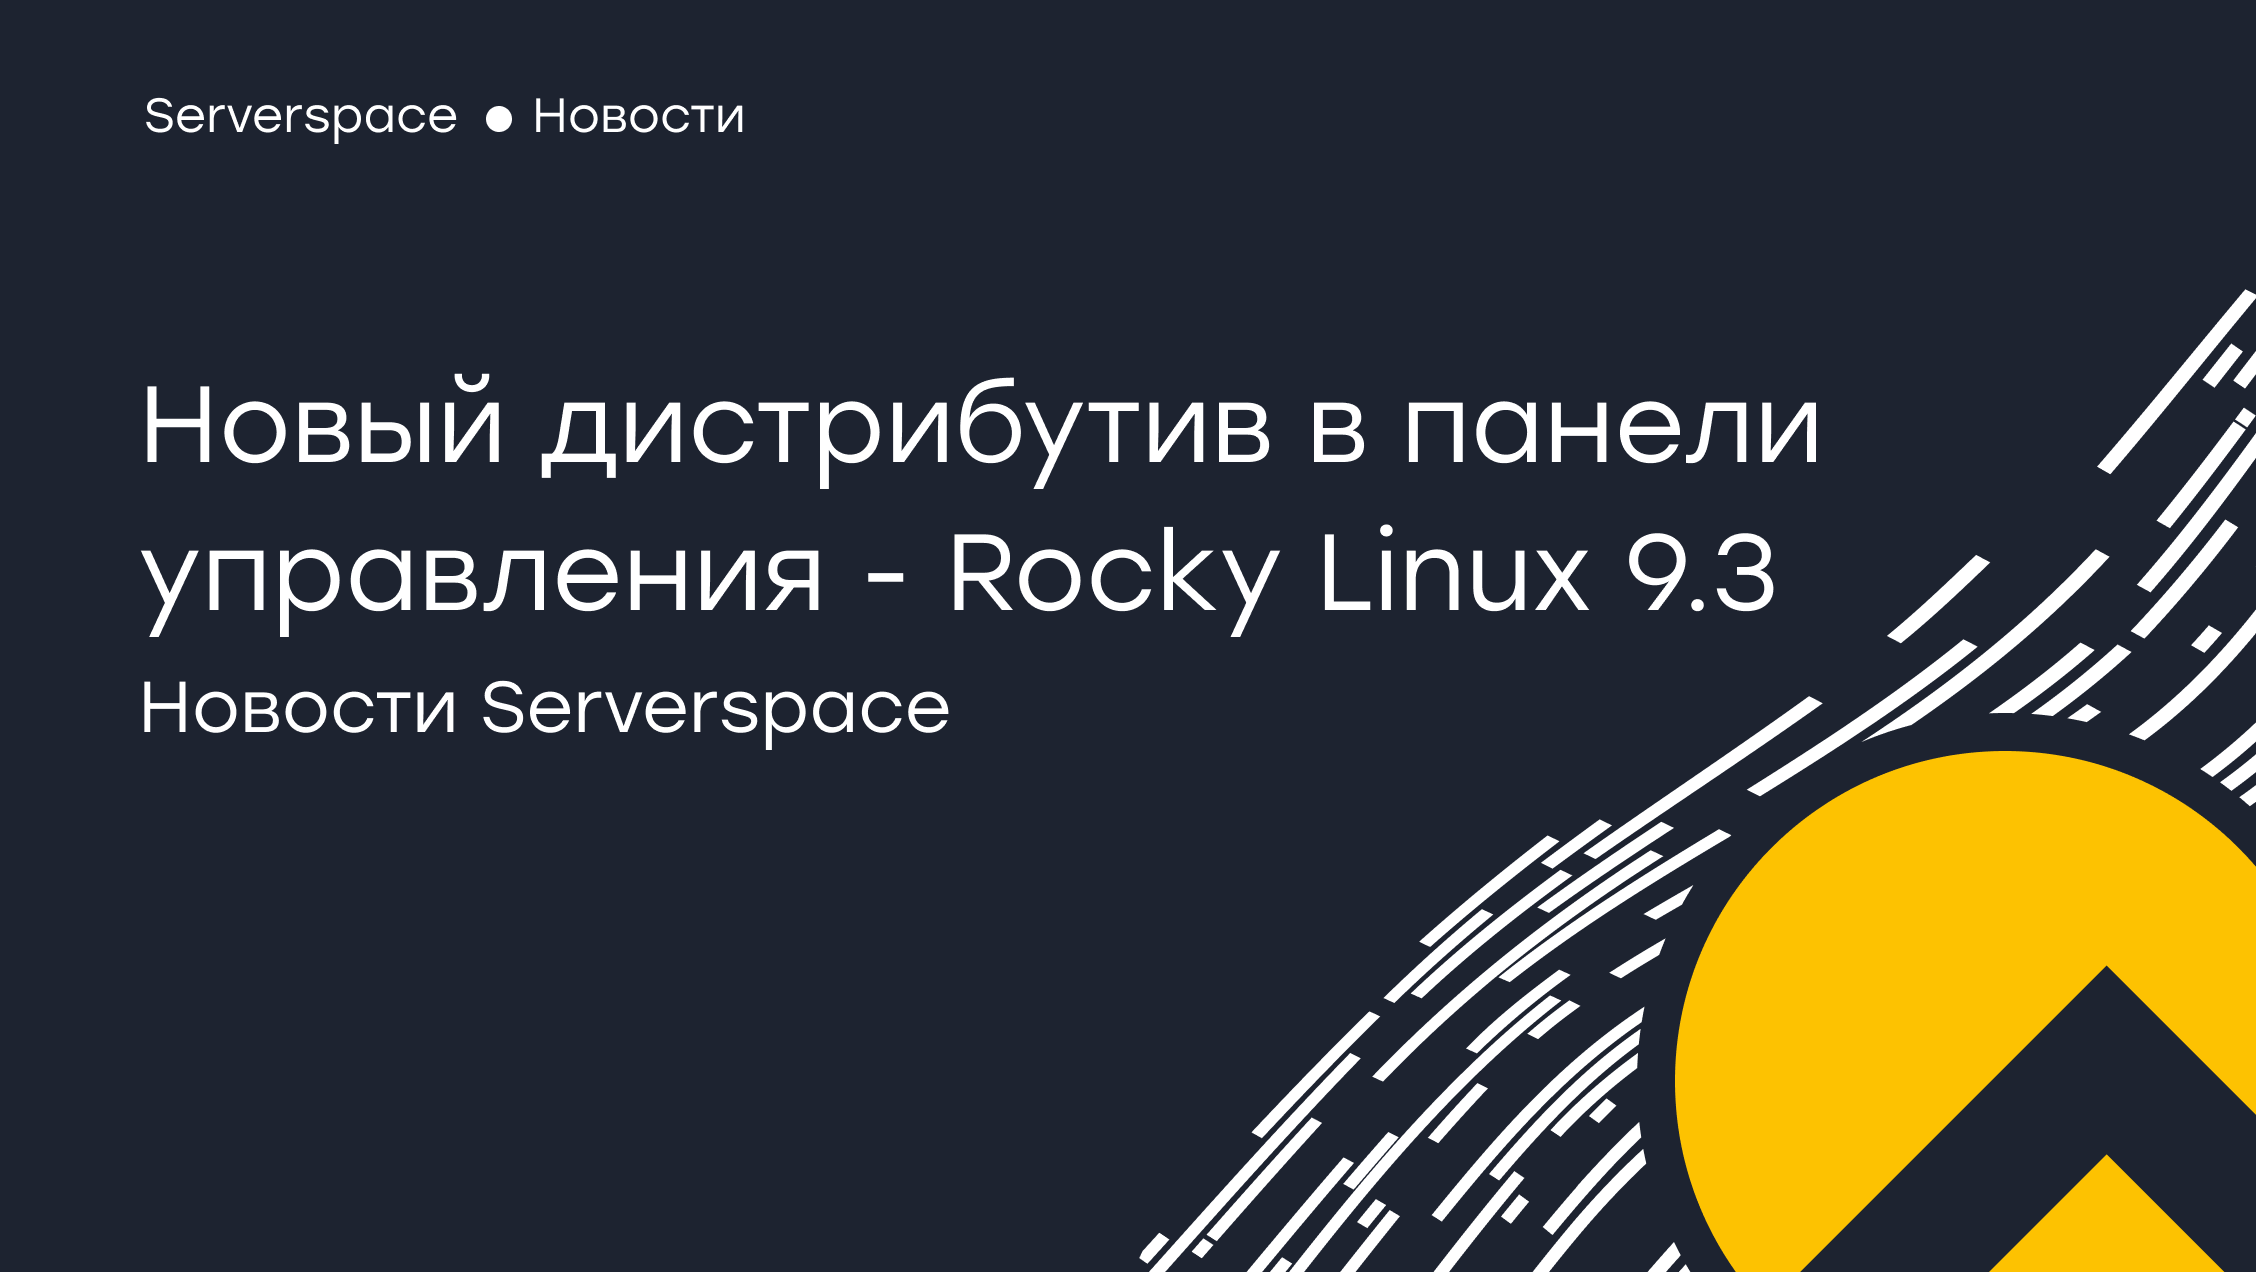 Serverspace a adăugat suport pentru noua distribuție Rocky Linux 9.3